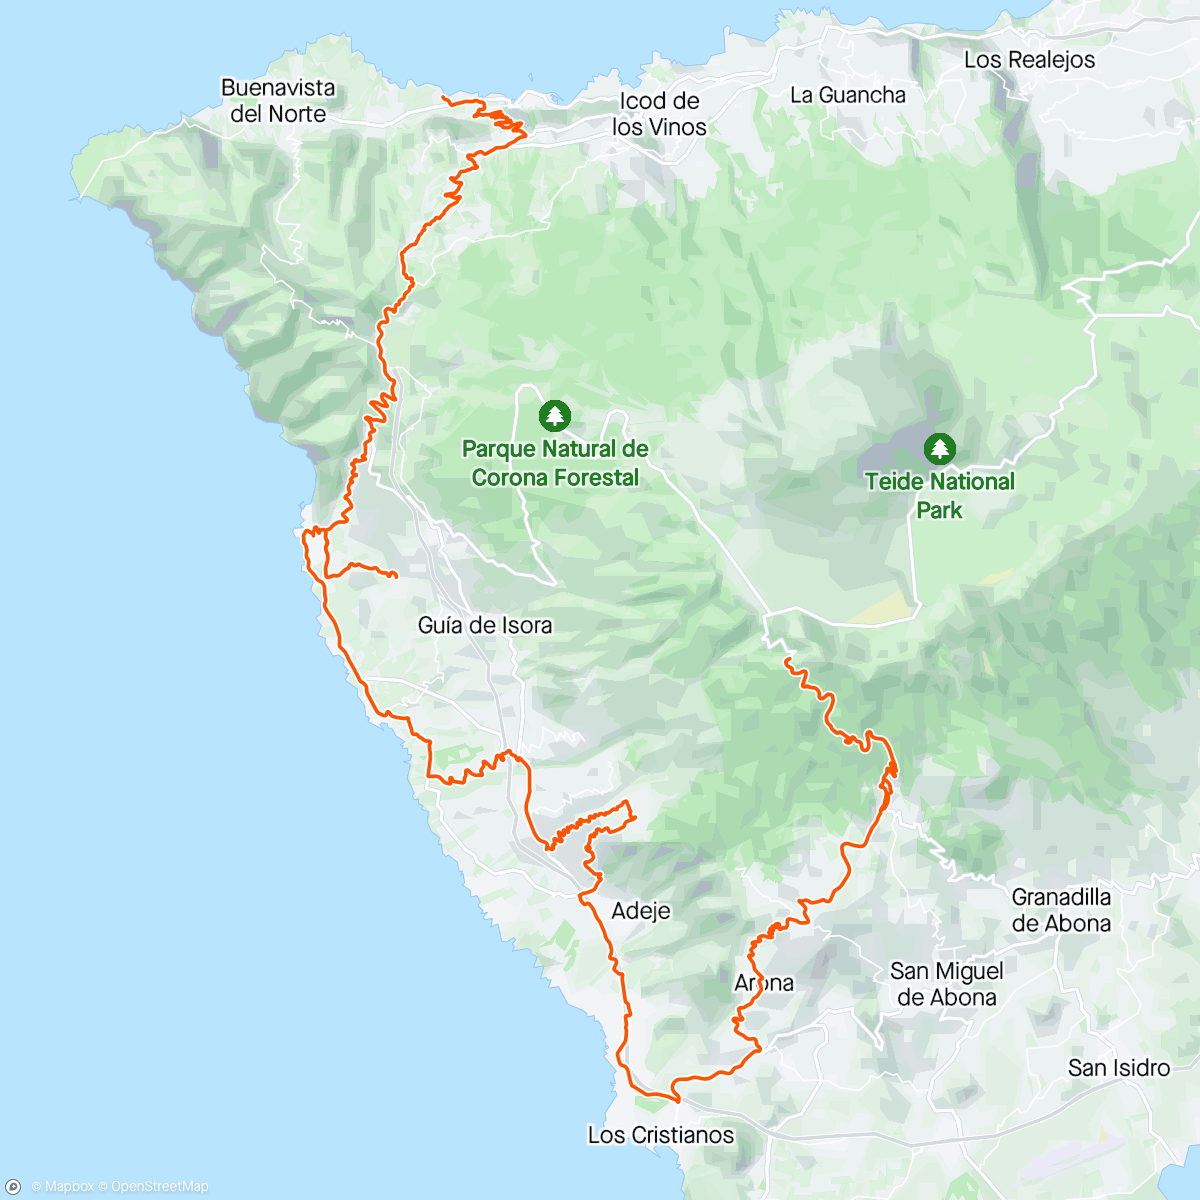 「Moving between two beautiful peublos de Tenerife 🤩」活動的地圖